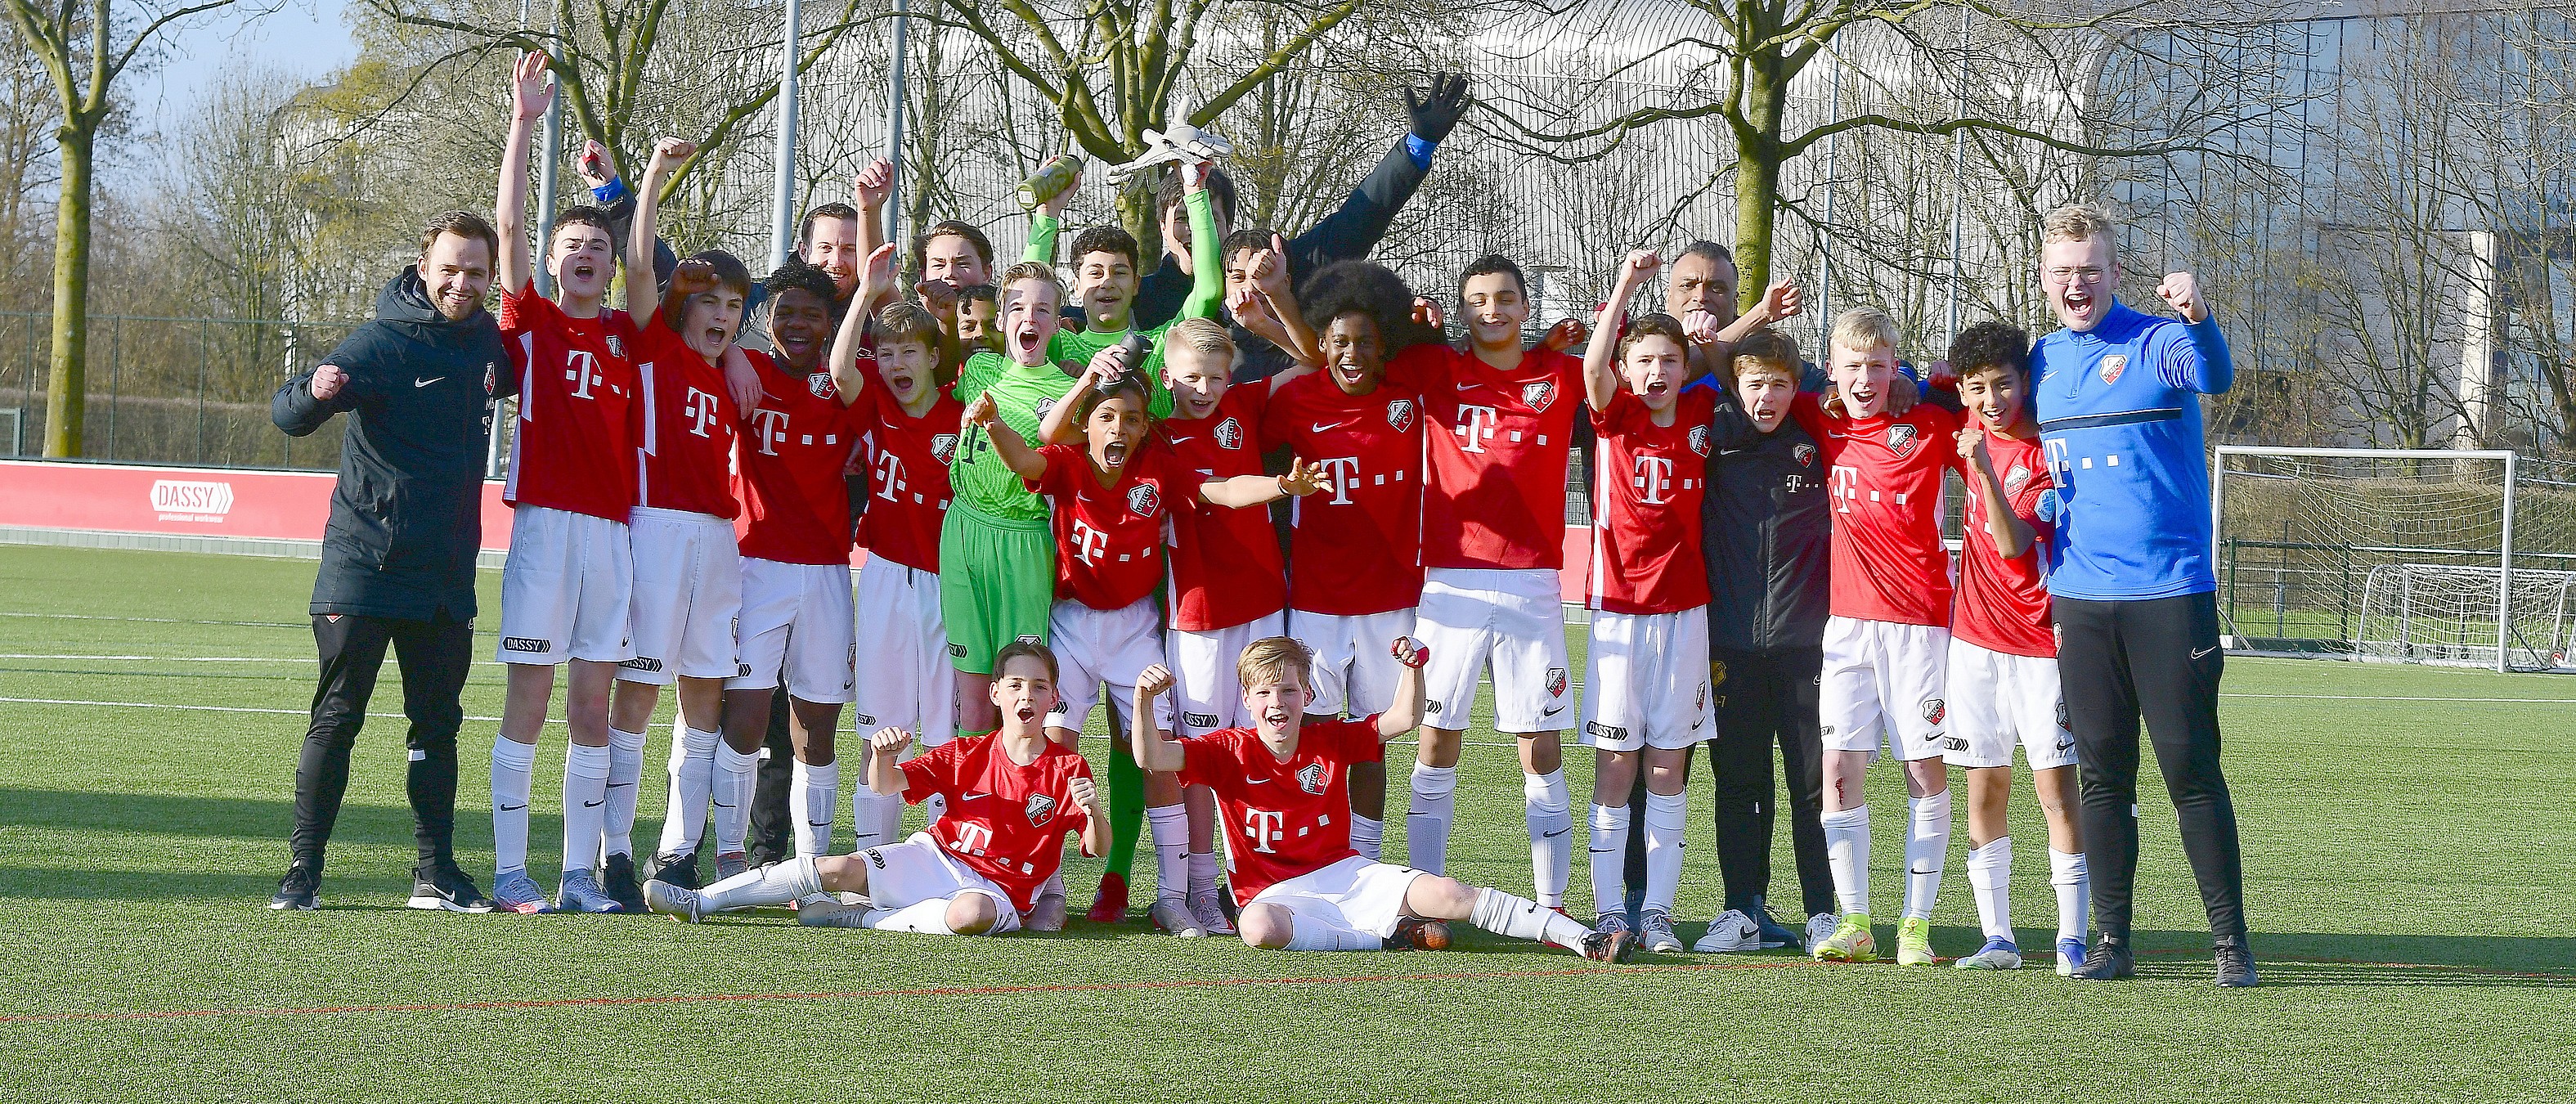 Wedstrijd van de week: FC Utrecht O14 wordt najaarskampioen met dubbele cijfers